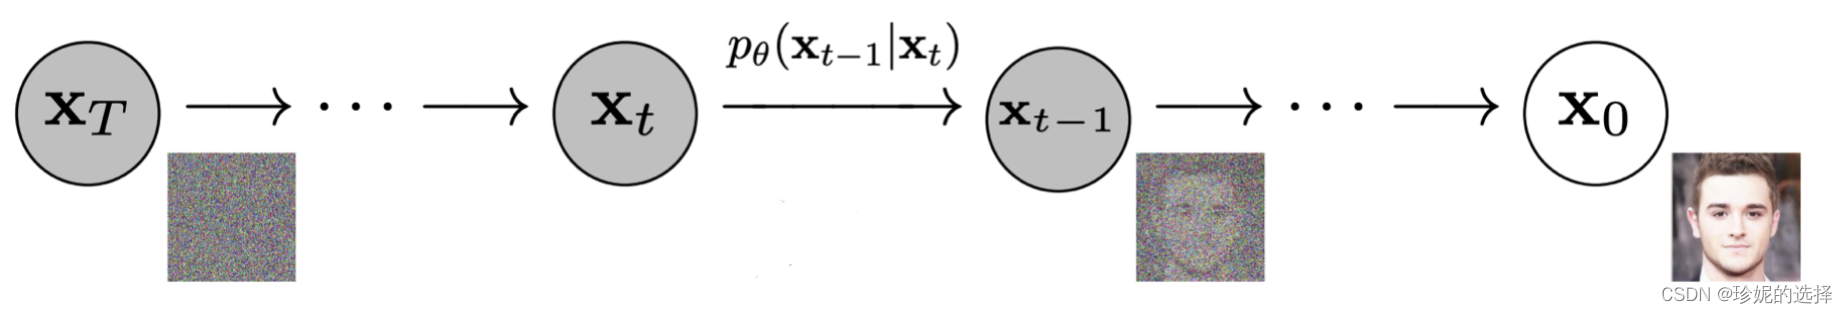 扩散模型 (Diffusion Model) 简要介绍与源码分析_深度学习_03